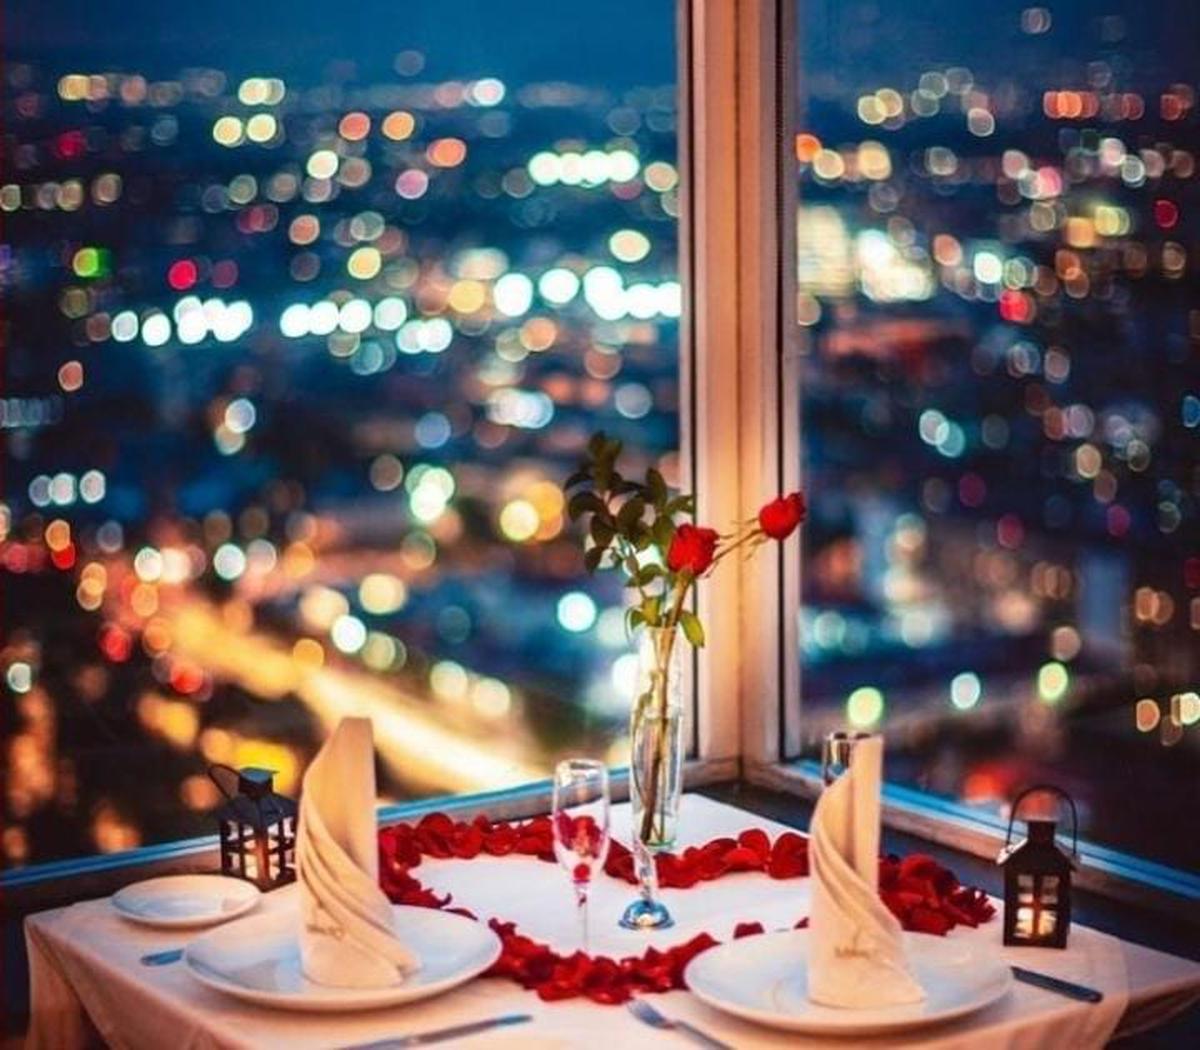 Experiencia romántica | Experiencia romántica en el piso 41 de la Torre Latinoamericana (Miraltomx/Instagram).